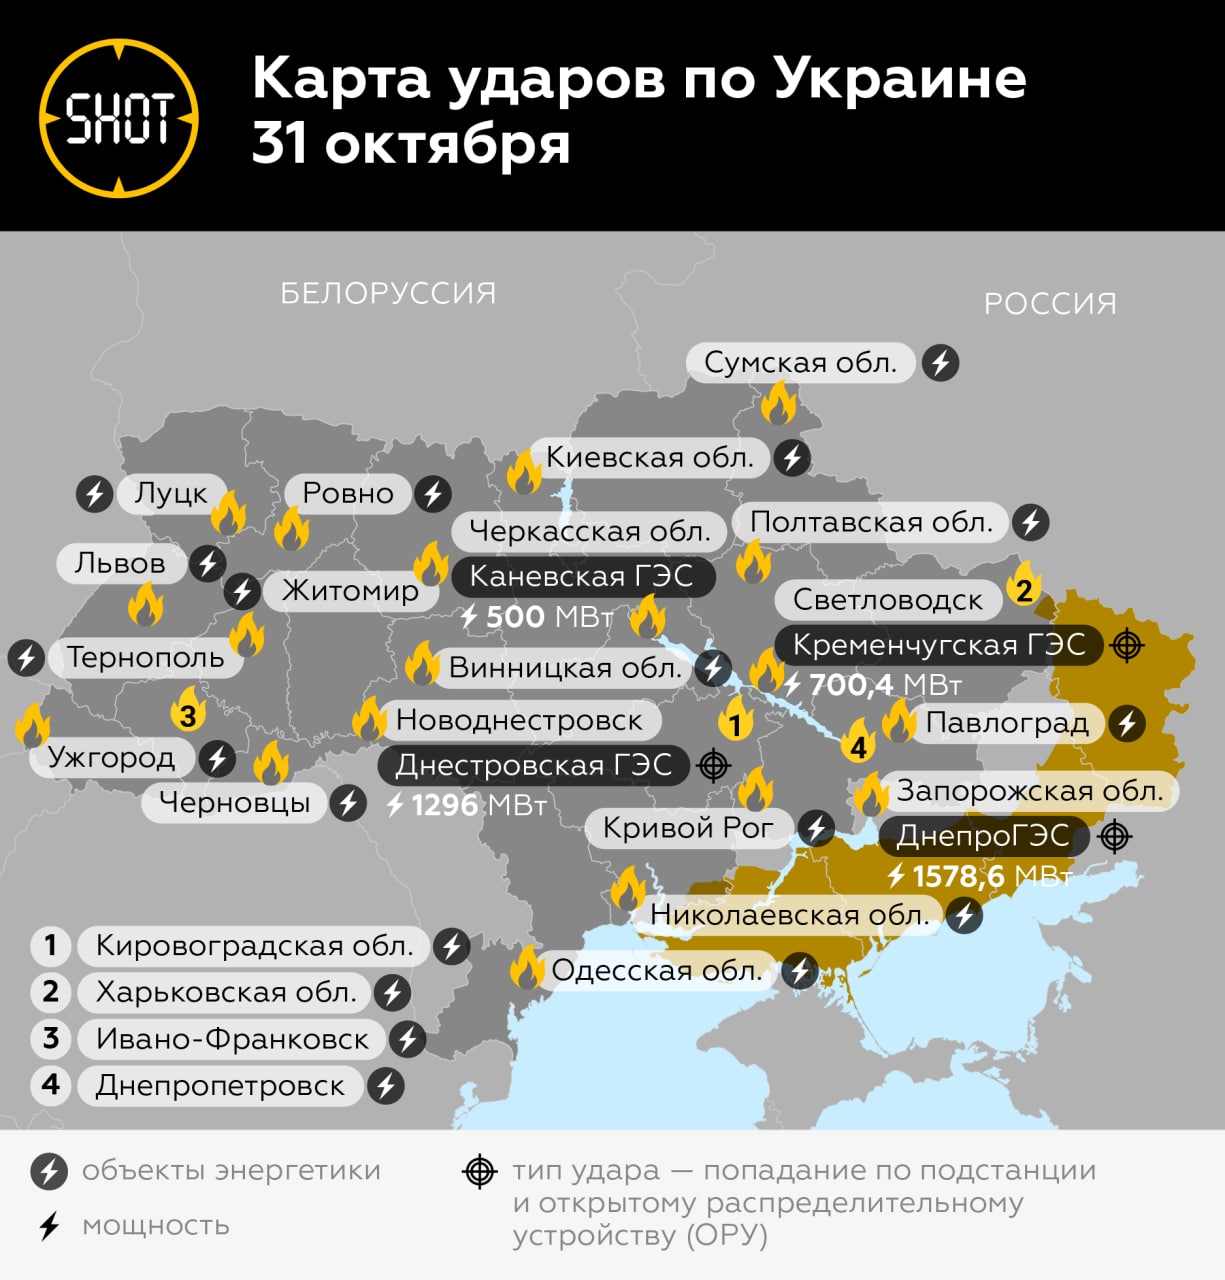 Цели ударов по россии. Гидроэлектростанции Украины на карте. Украинские ГЭС на карте. Удары по украинской инфраструктуре. Ракетные удары по Украине.